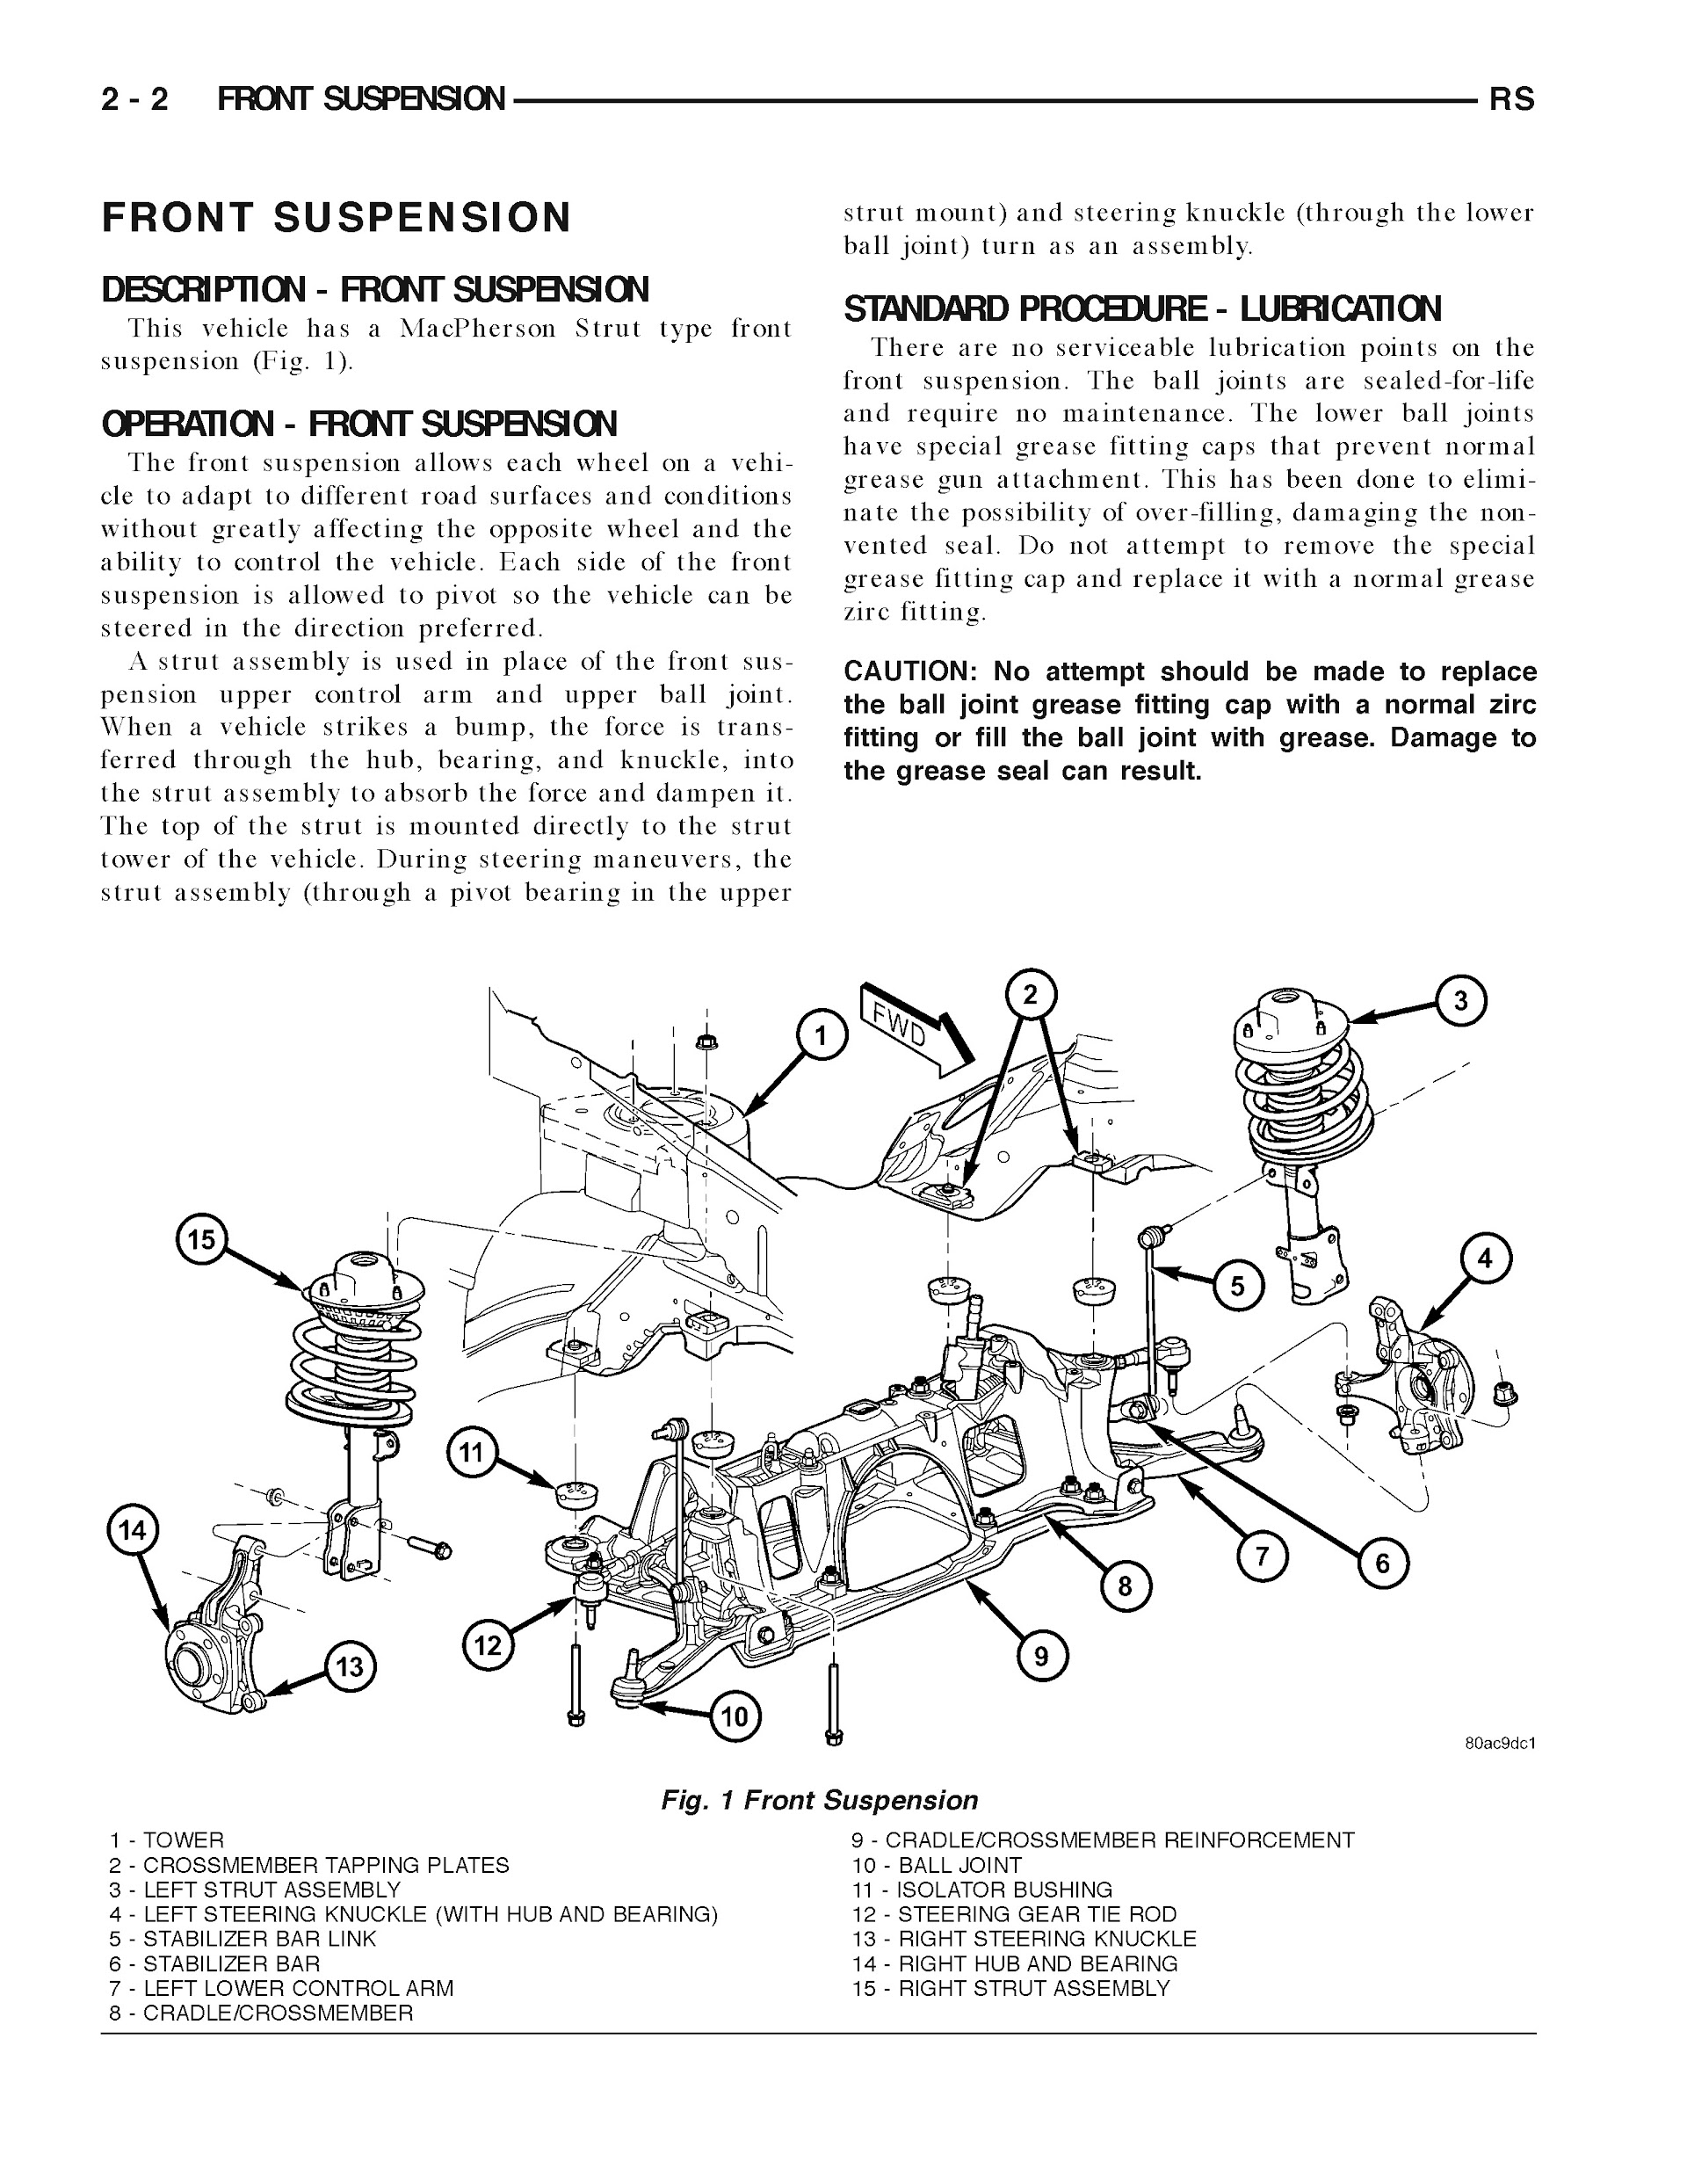 2005-2006 Dodge Grand Caravan Repair Manual, Front Suspension